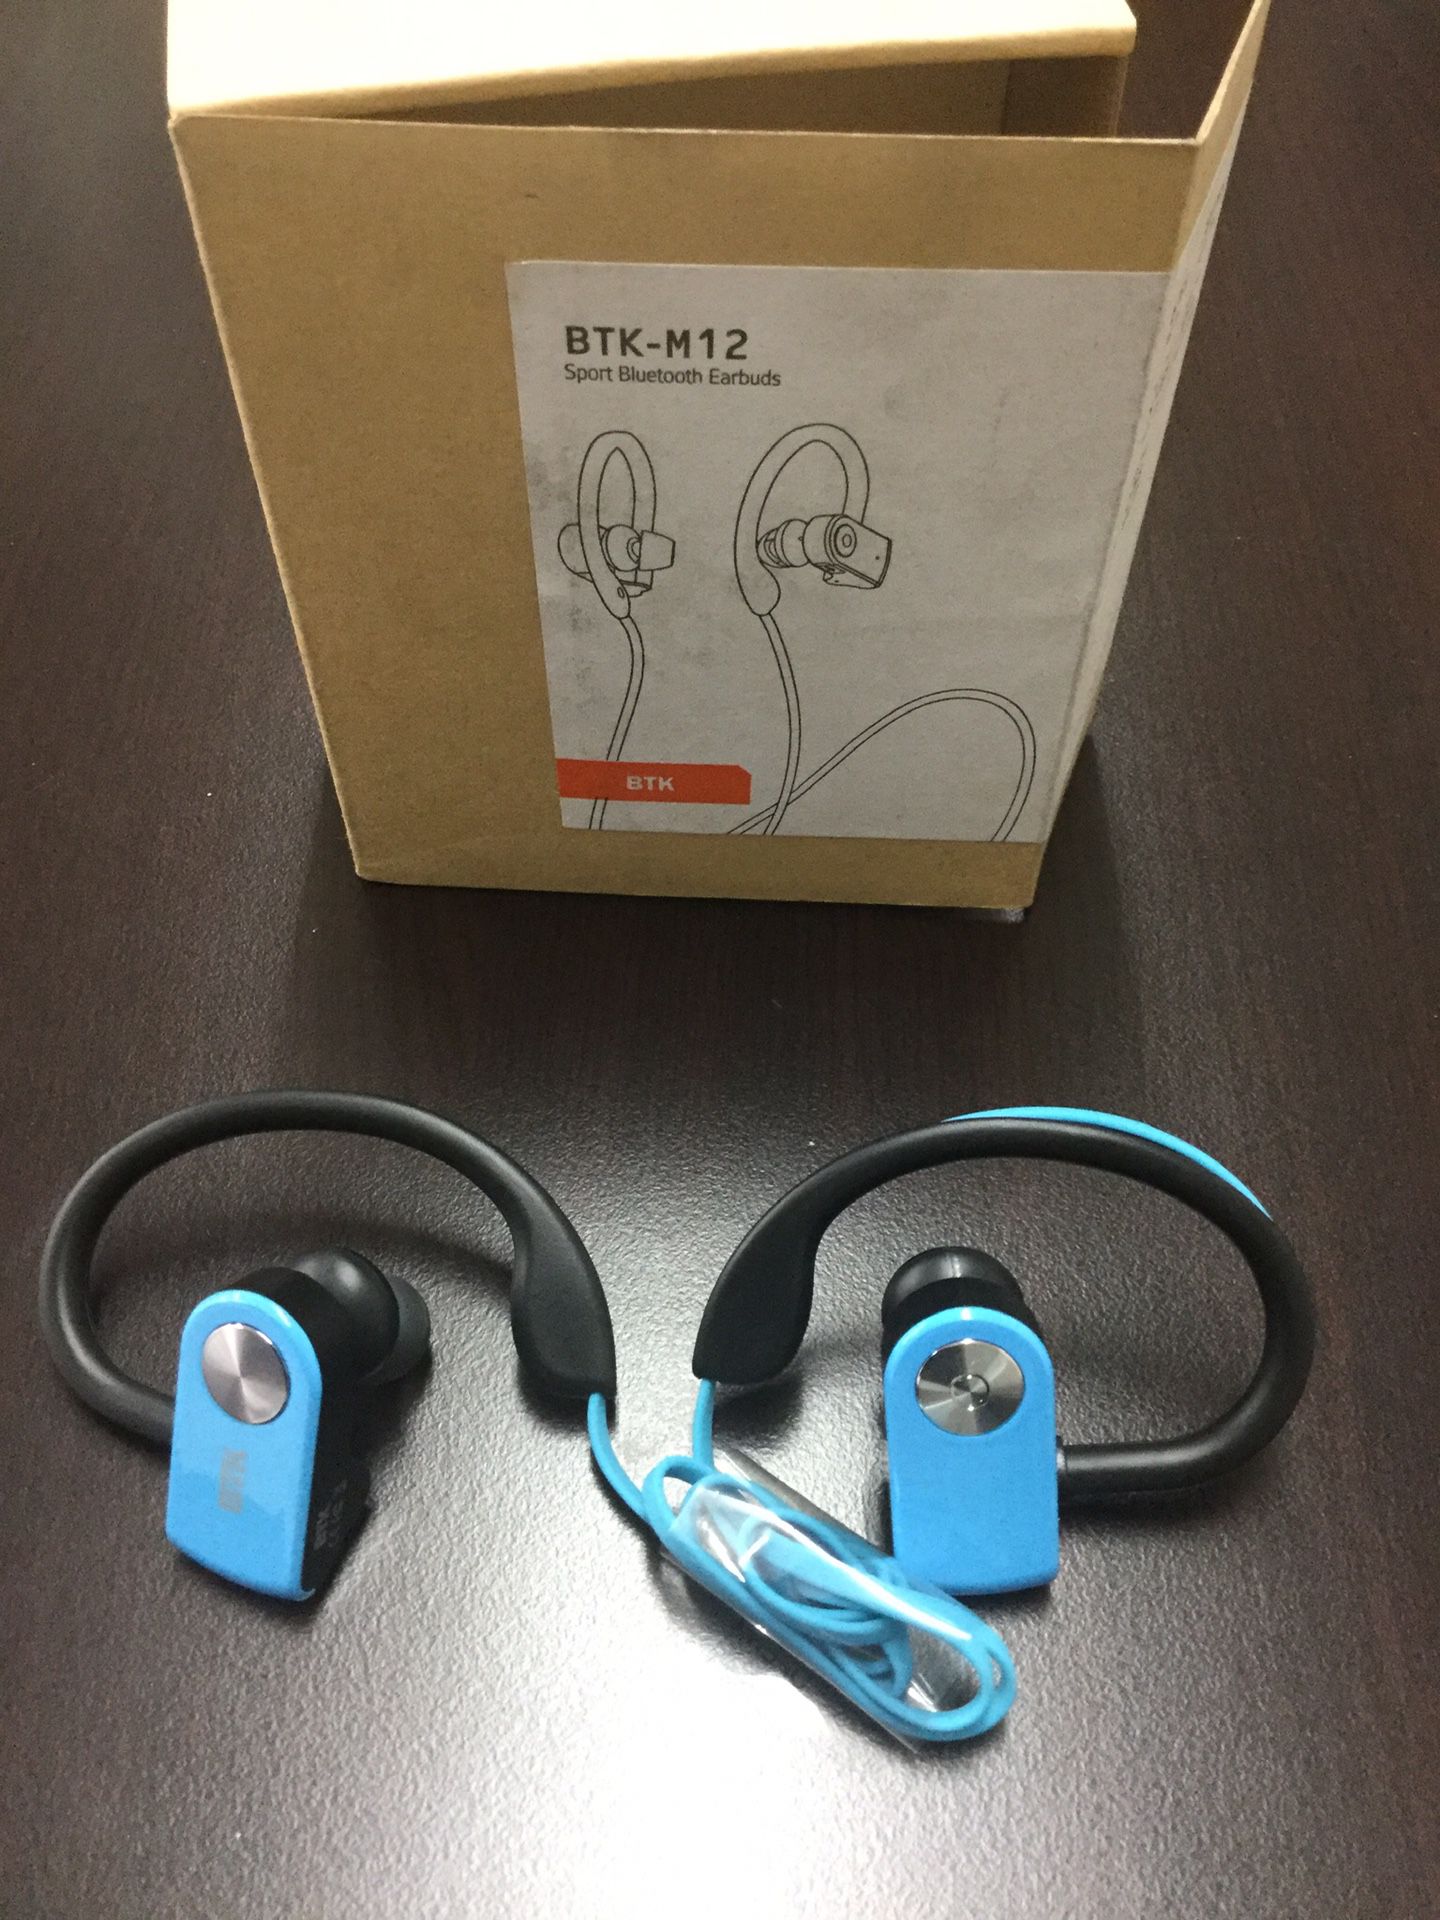 BTK-M12 Sport Bluetooth Earbuds headset